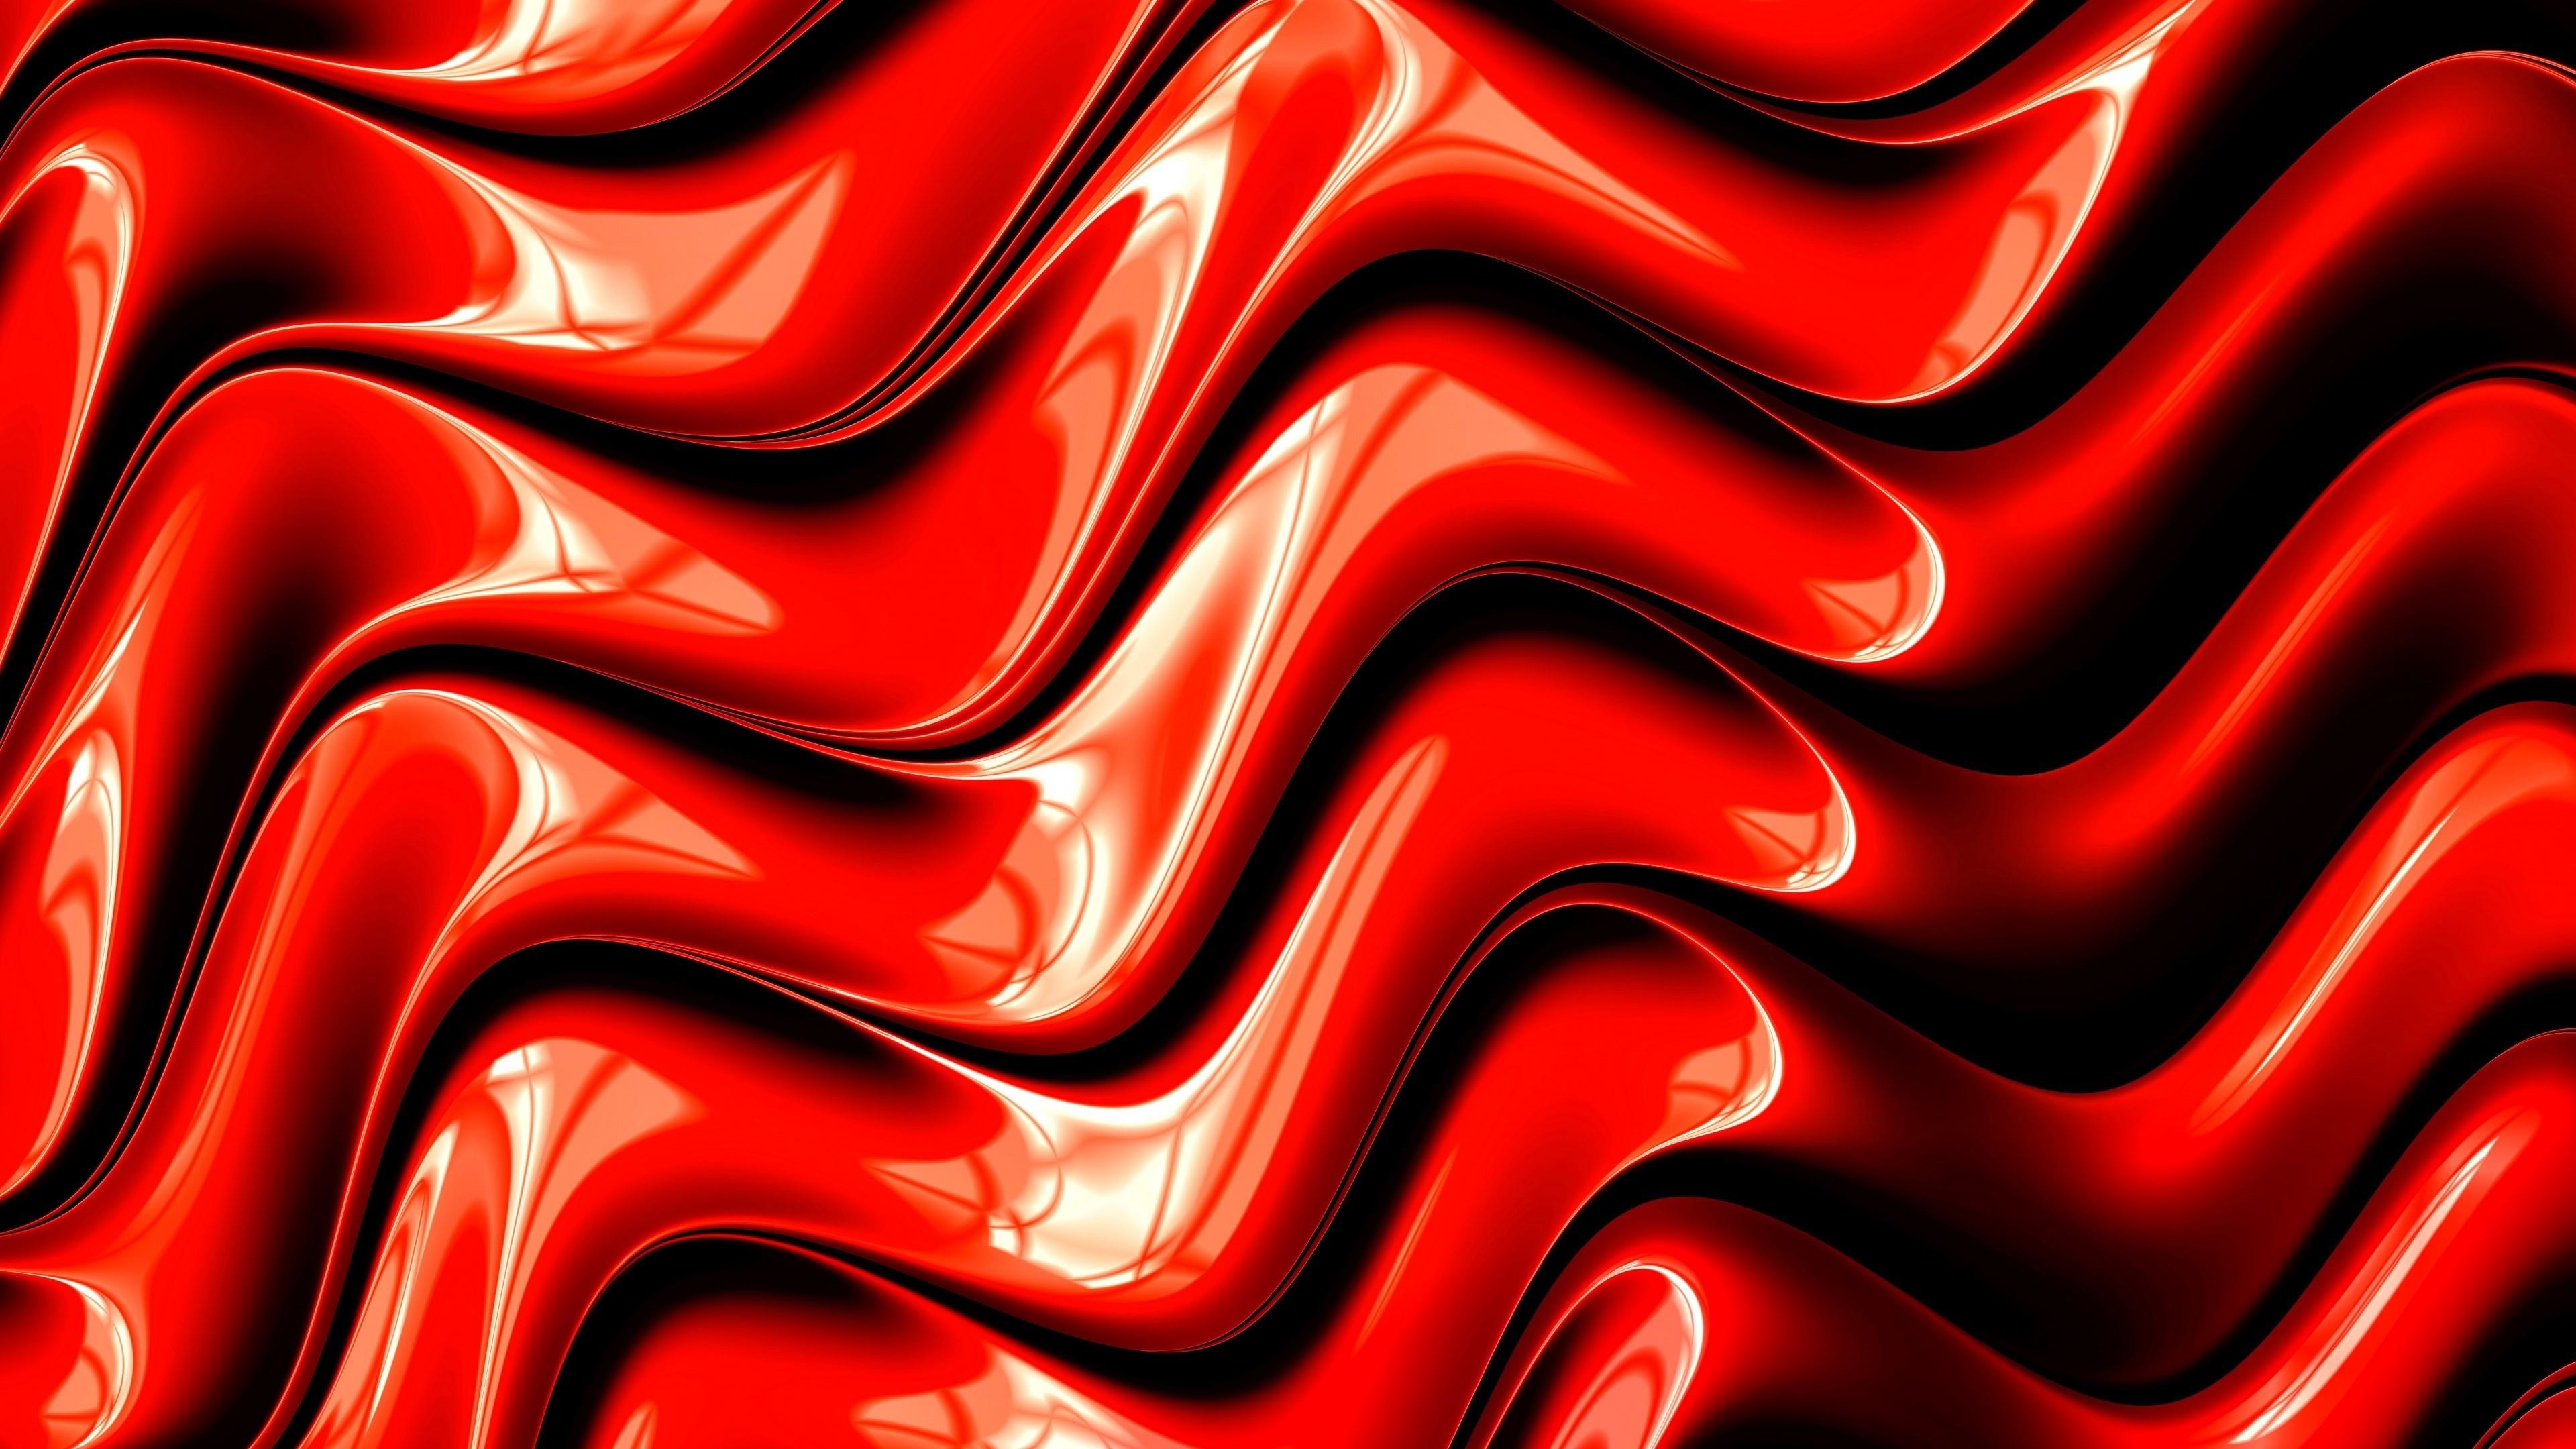 Cool Red Lightning Wallpapers - Top Những Hình Ảnh Đẹp